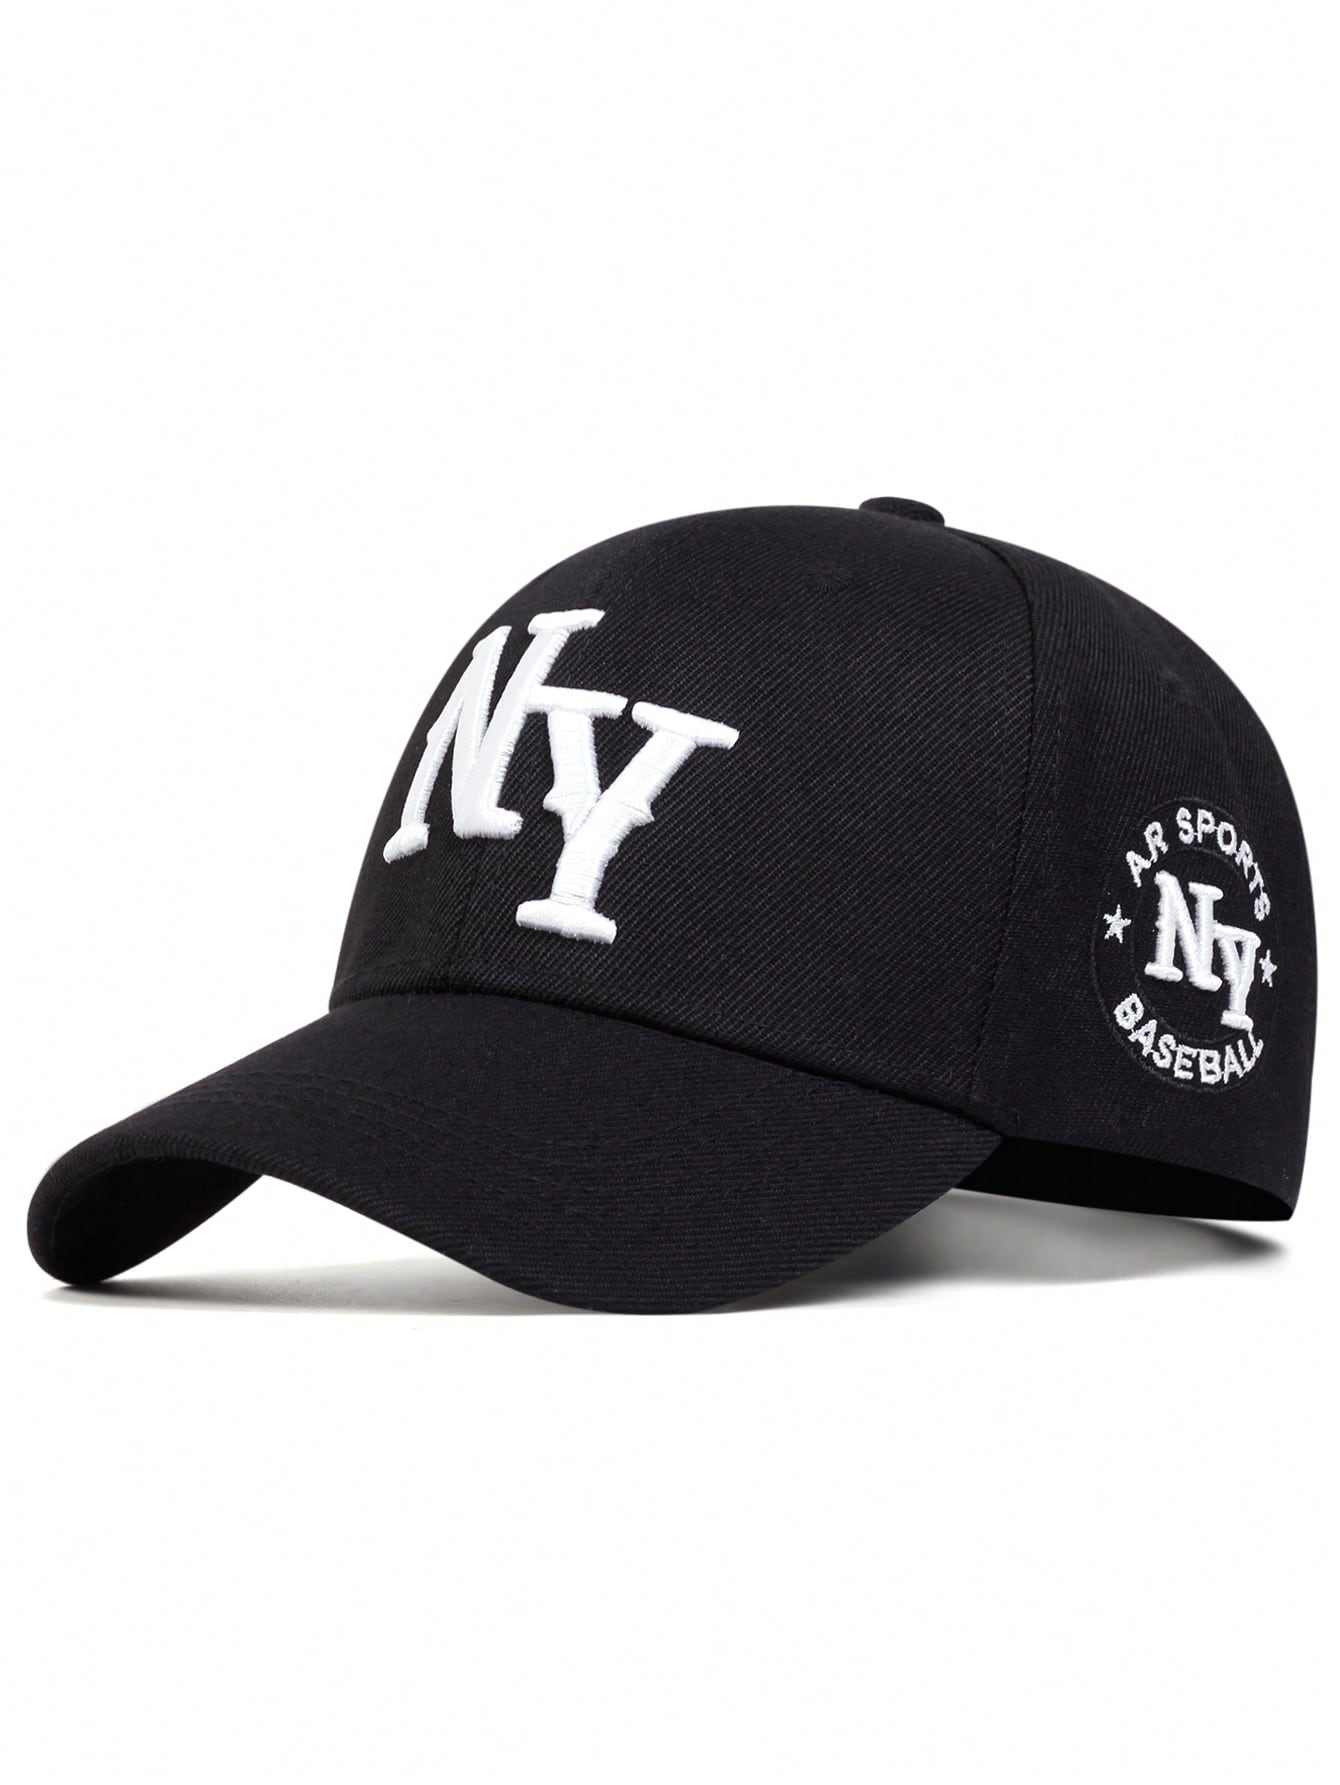 1 шт. мужская бейсболка с вышивкой букв «Нью-Йорк», черный модная летняя новая мужская бейсболка с вышитыми надписями nyc уличная женская солнцезащитная кепка от солнца бейсболка